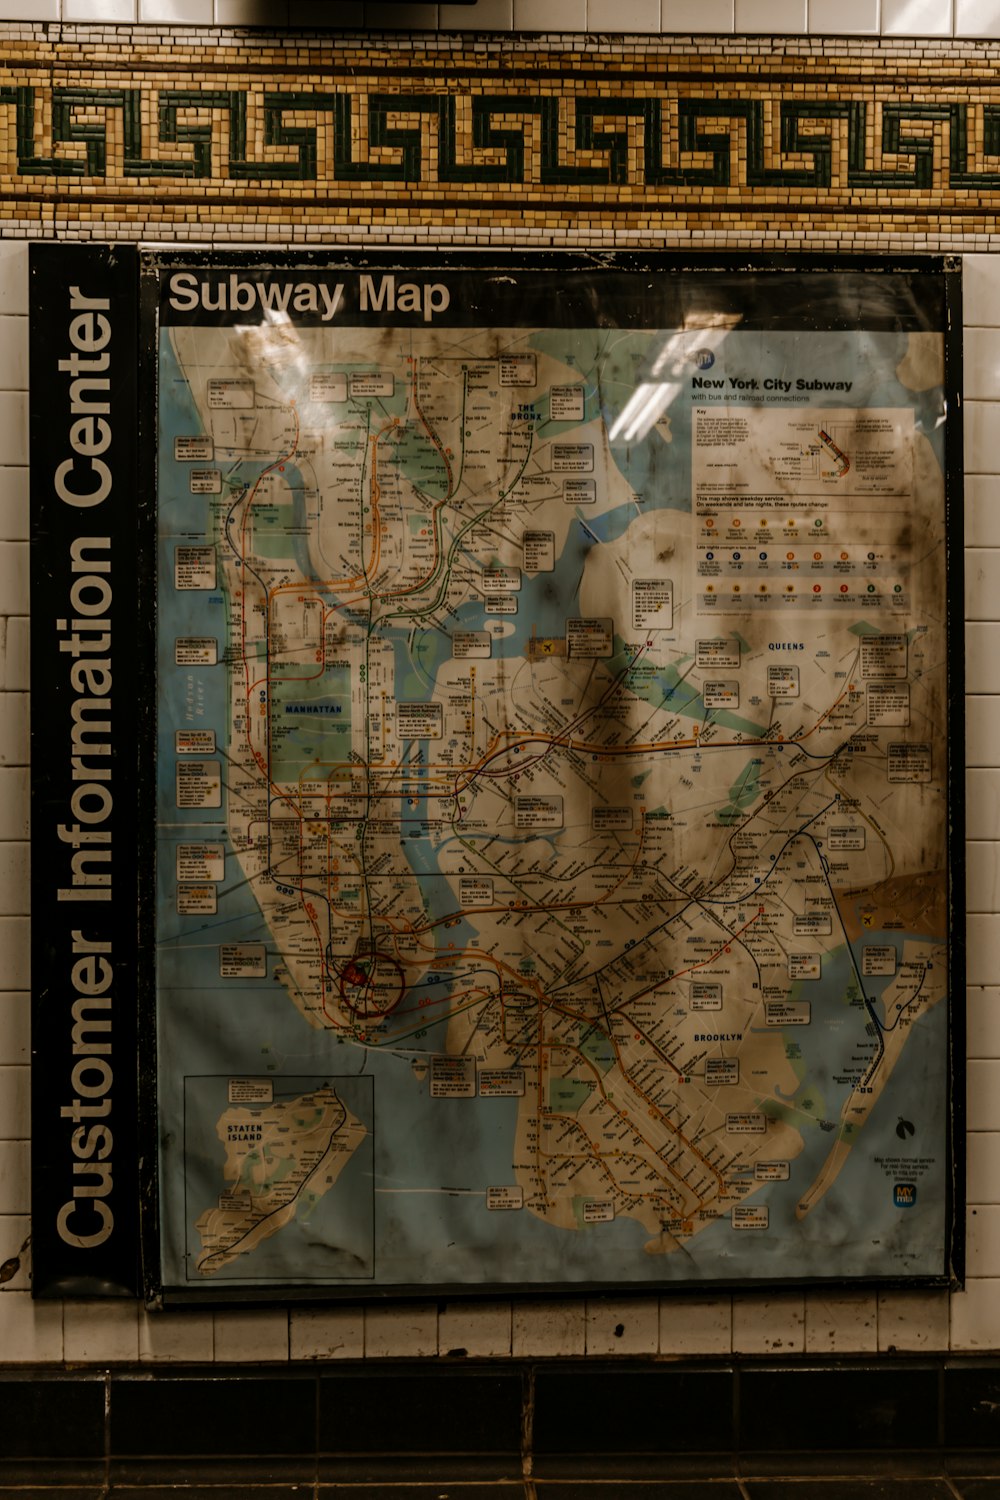 地下鉄駅の壁に掛かっている地下鉄路線図